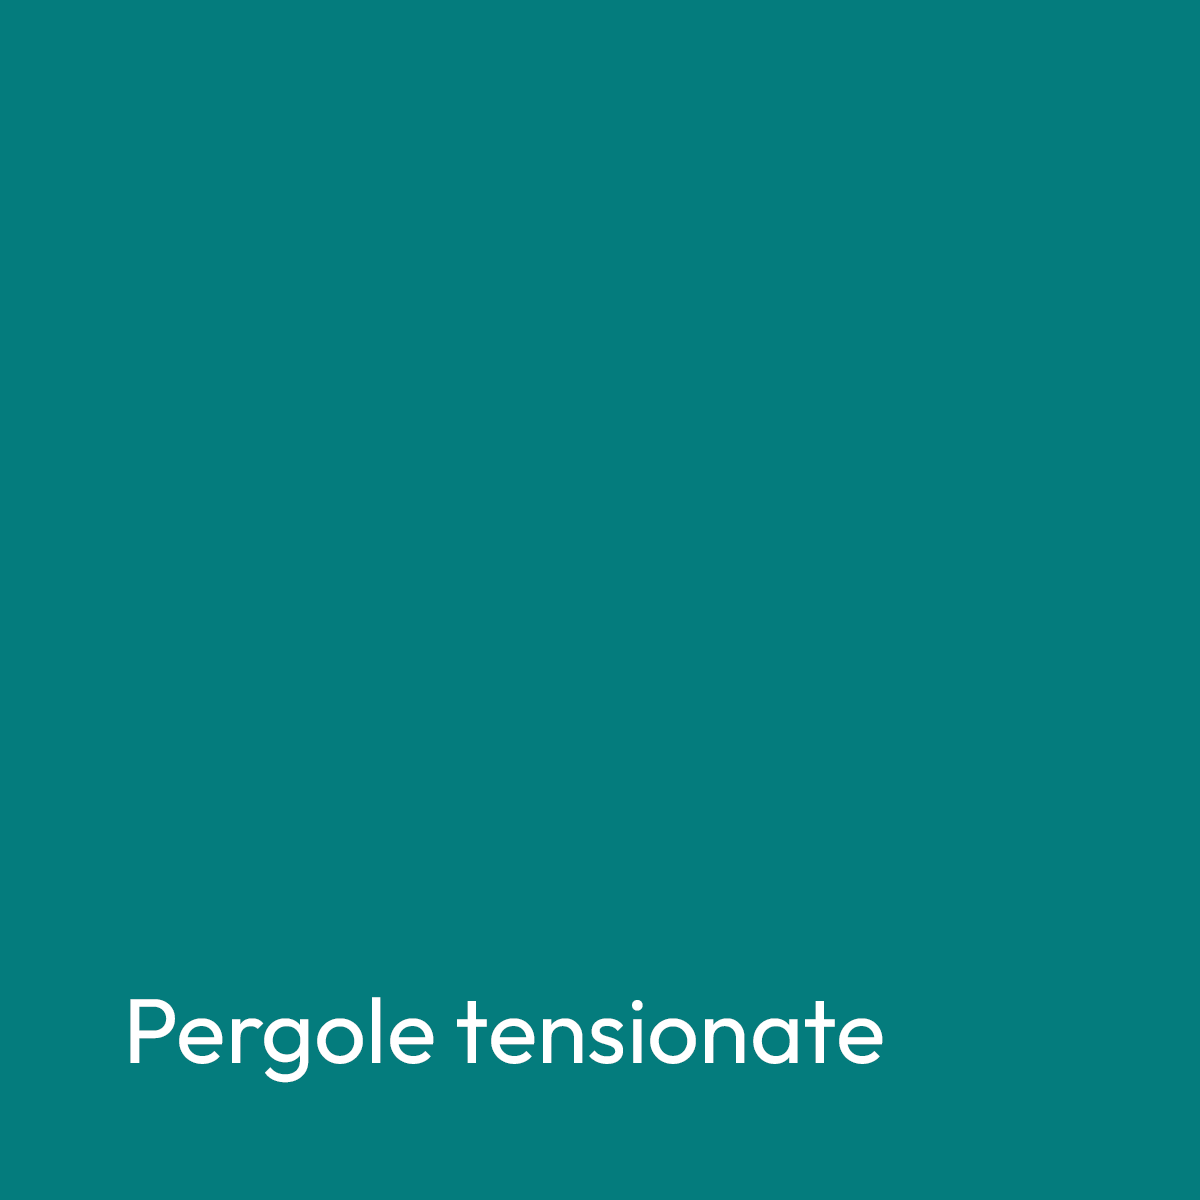 banner-title-pergoletensionate